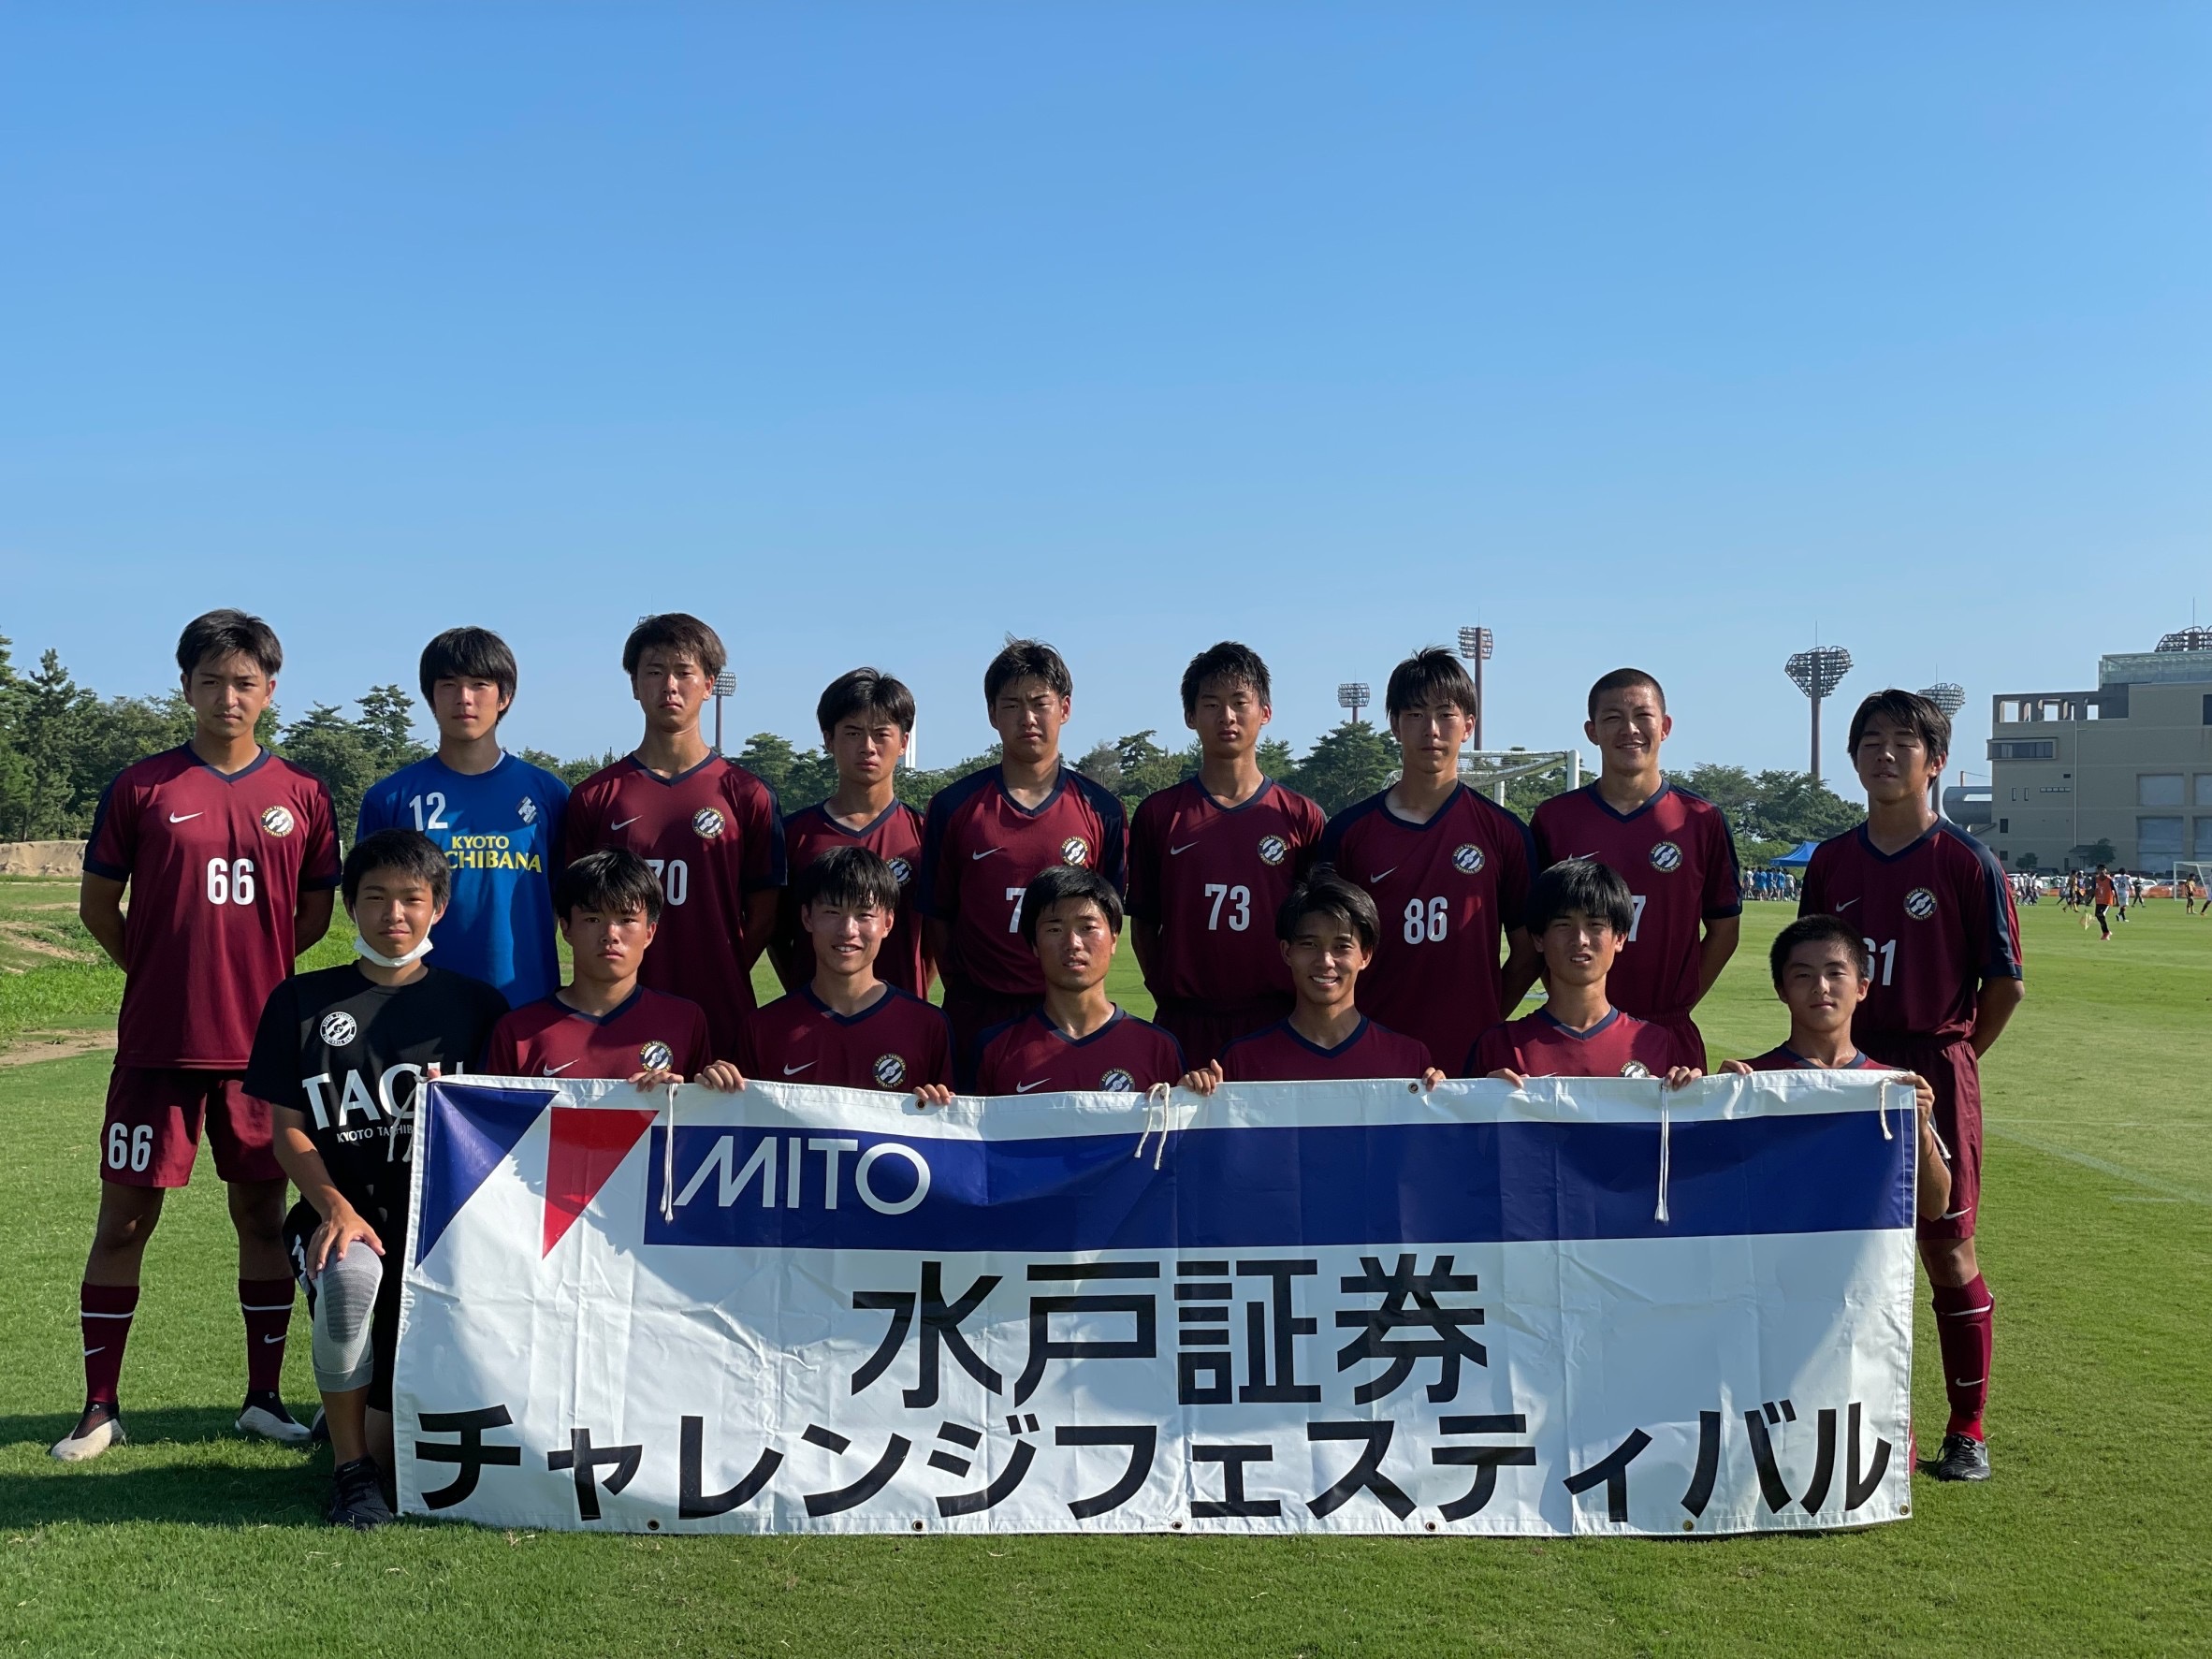 22水戸ホーリーホックユースカップ 7 31 京都橘高校サッカー部 Official Web Site